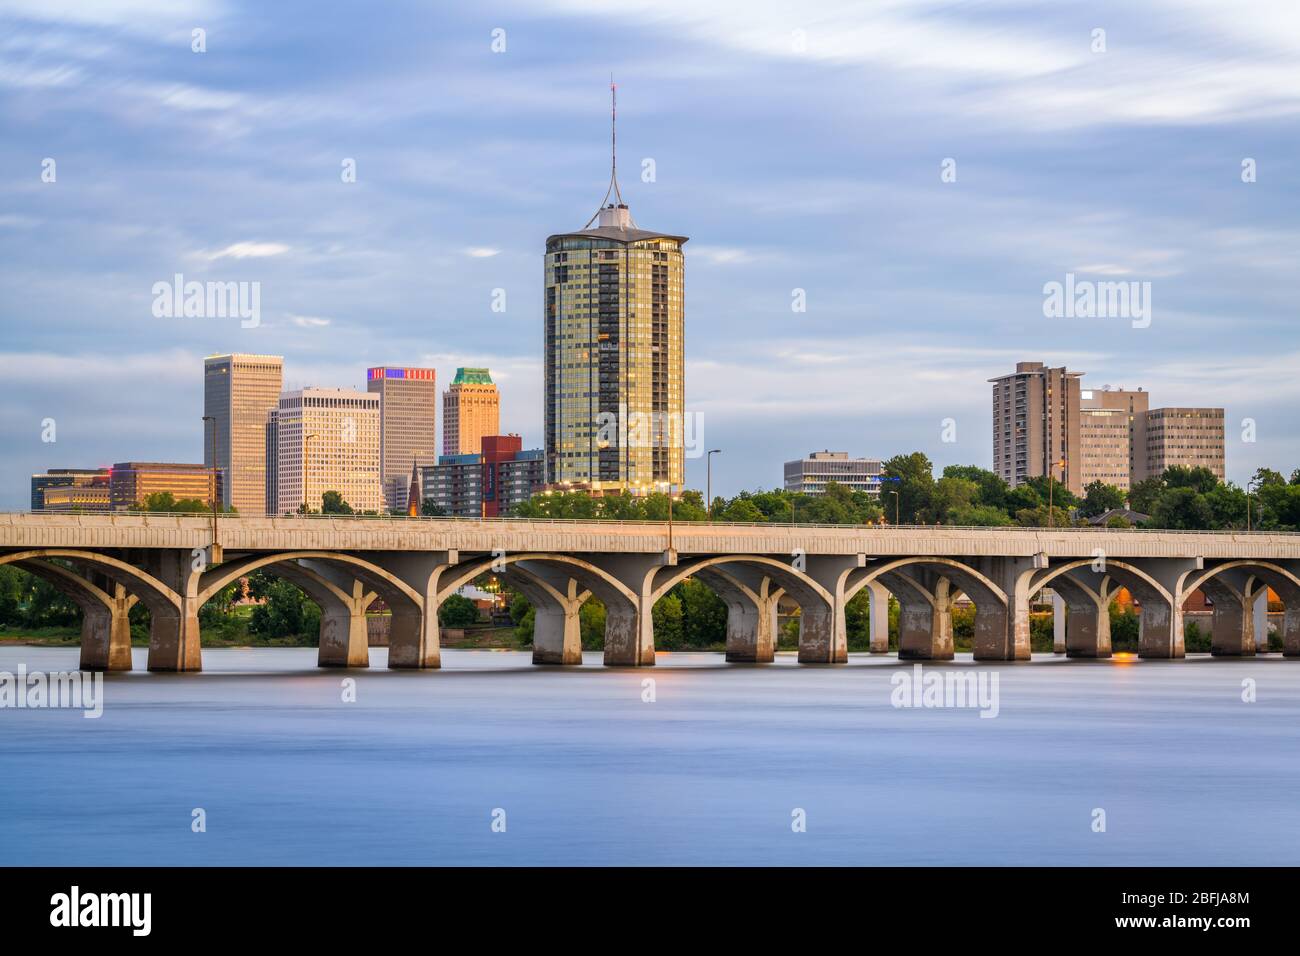 Tulsa, Oklahoma, USA Centre-ville sur la rivière Arkansas au crépuscule. Banque D'Images